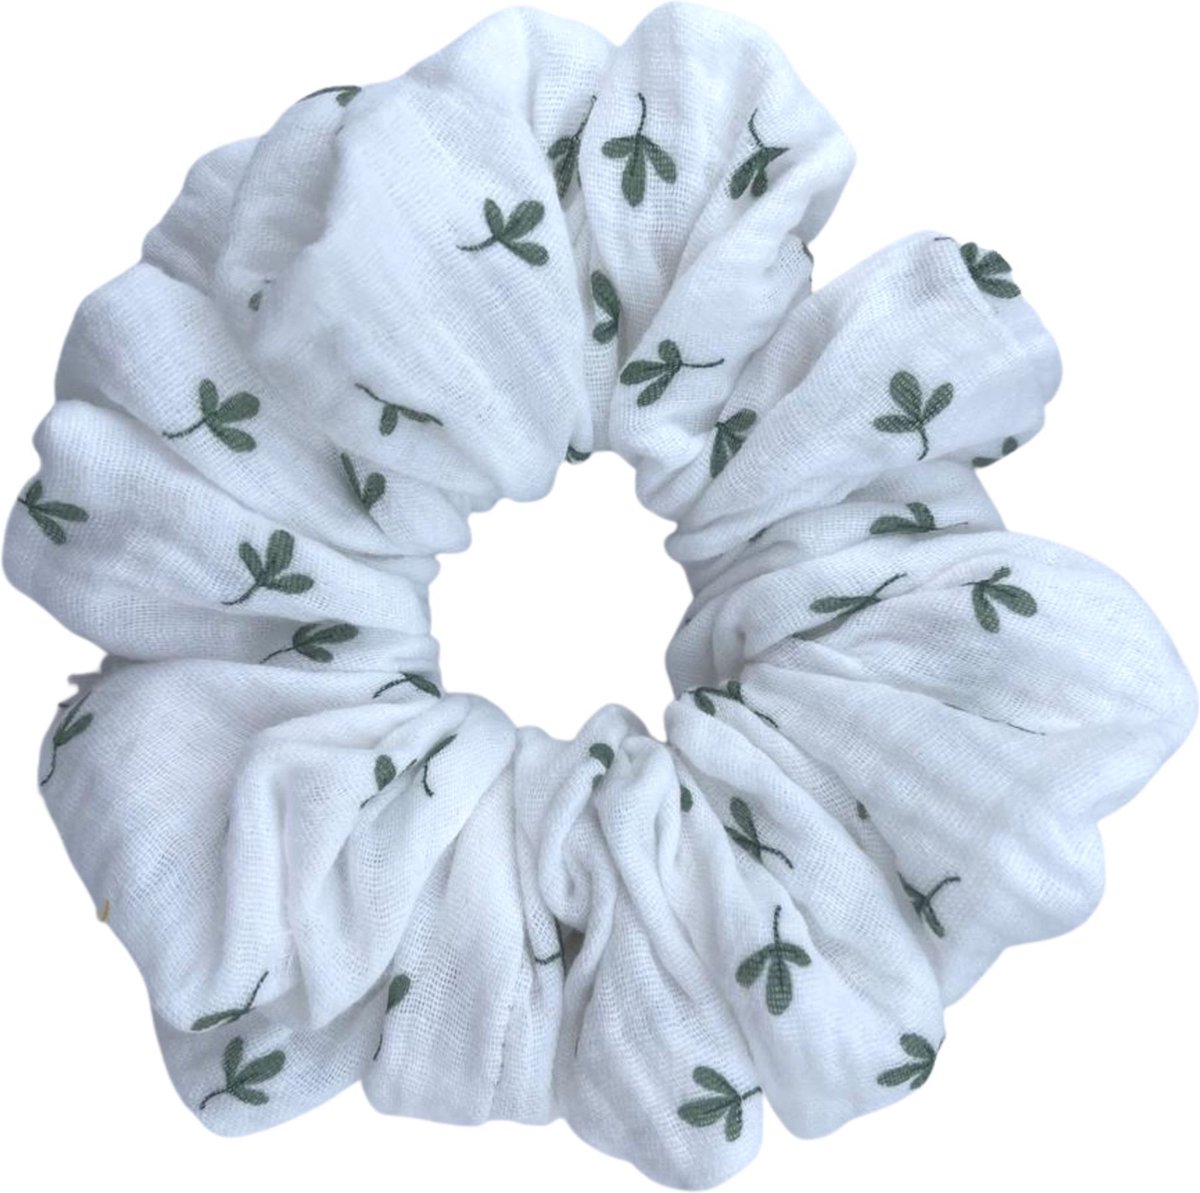 XL - Scrunchie - Handmade - Oversized - Wit met groene blaadjes - Diameter circa 16 cm - 100% Mousseline - Zacht voor je haar - Leuke variant voor haarelastiekjes - Haaraccessoires - haarwokkel - Fashiongoodiez.nl